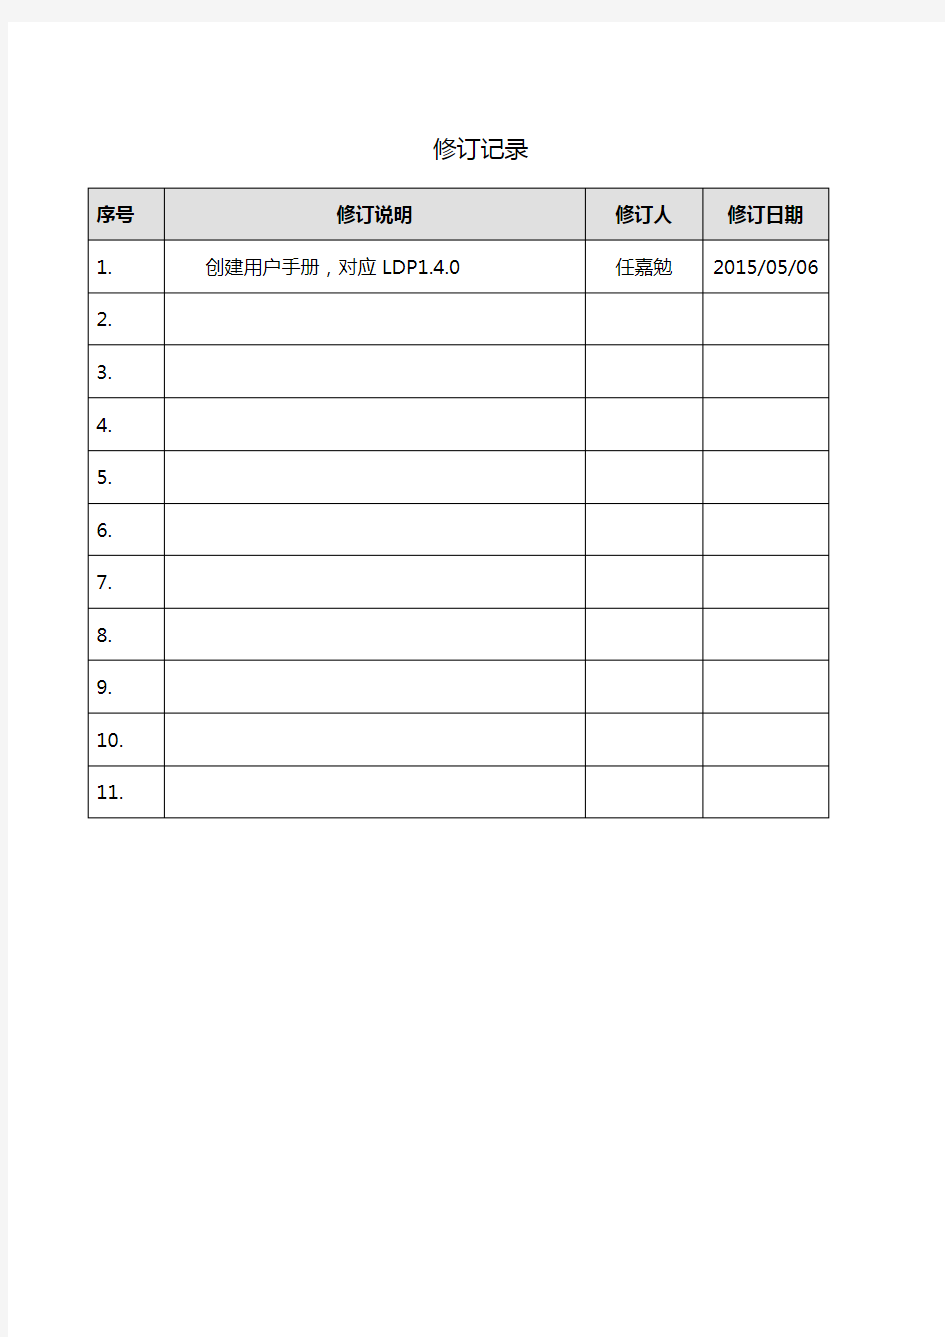 中国航信_LDP_V1.4.0-用户手册_V1.0